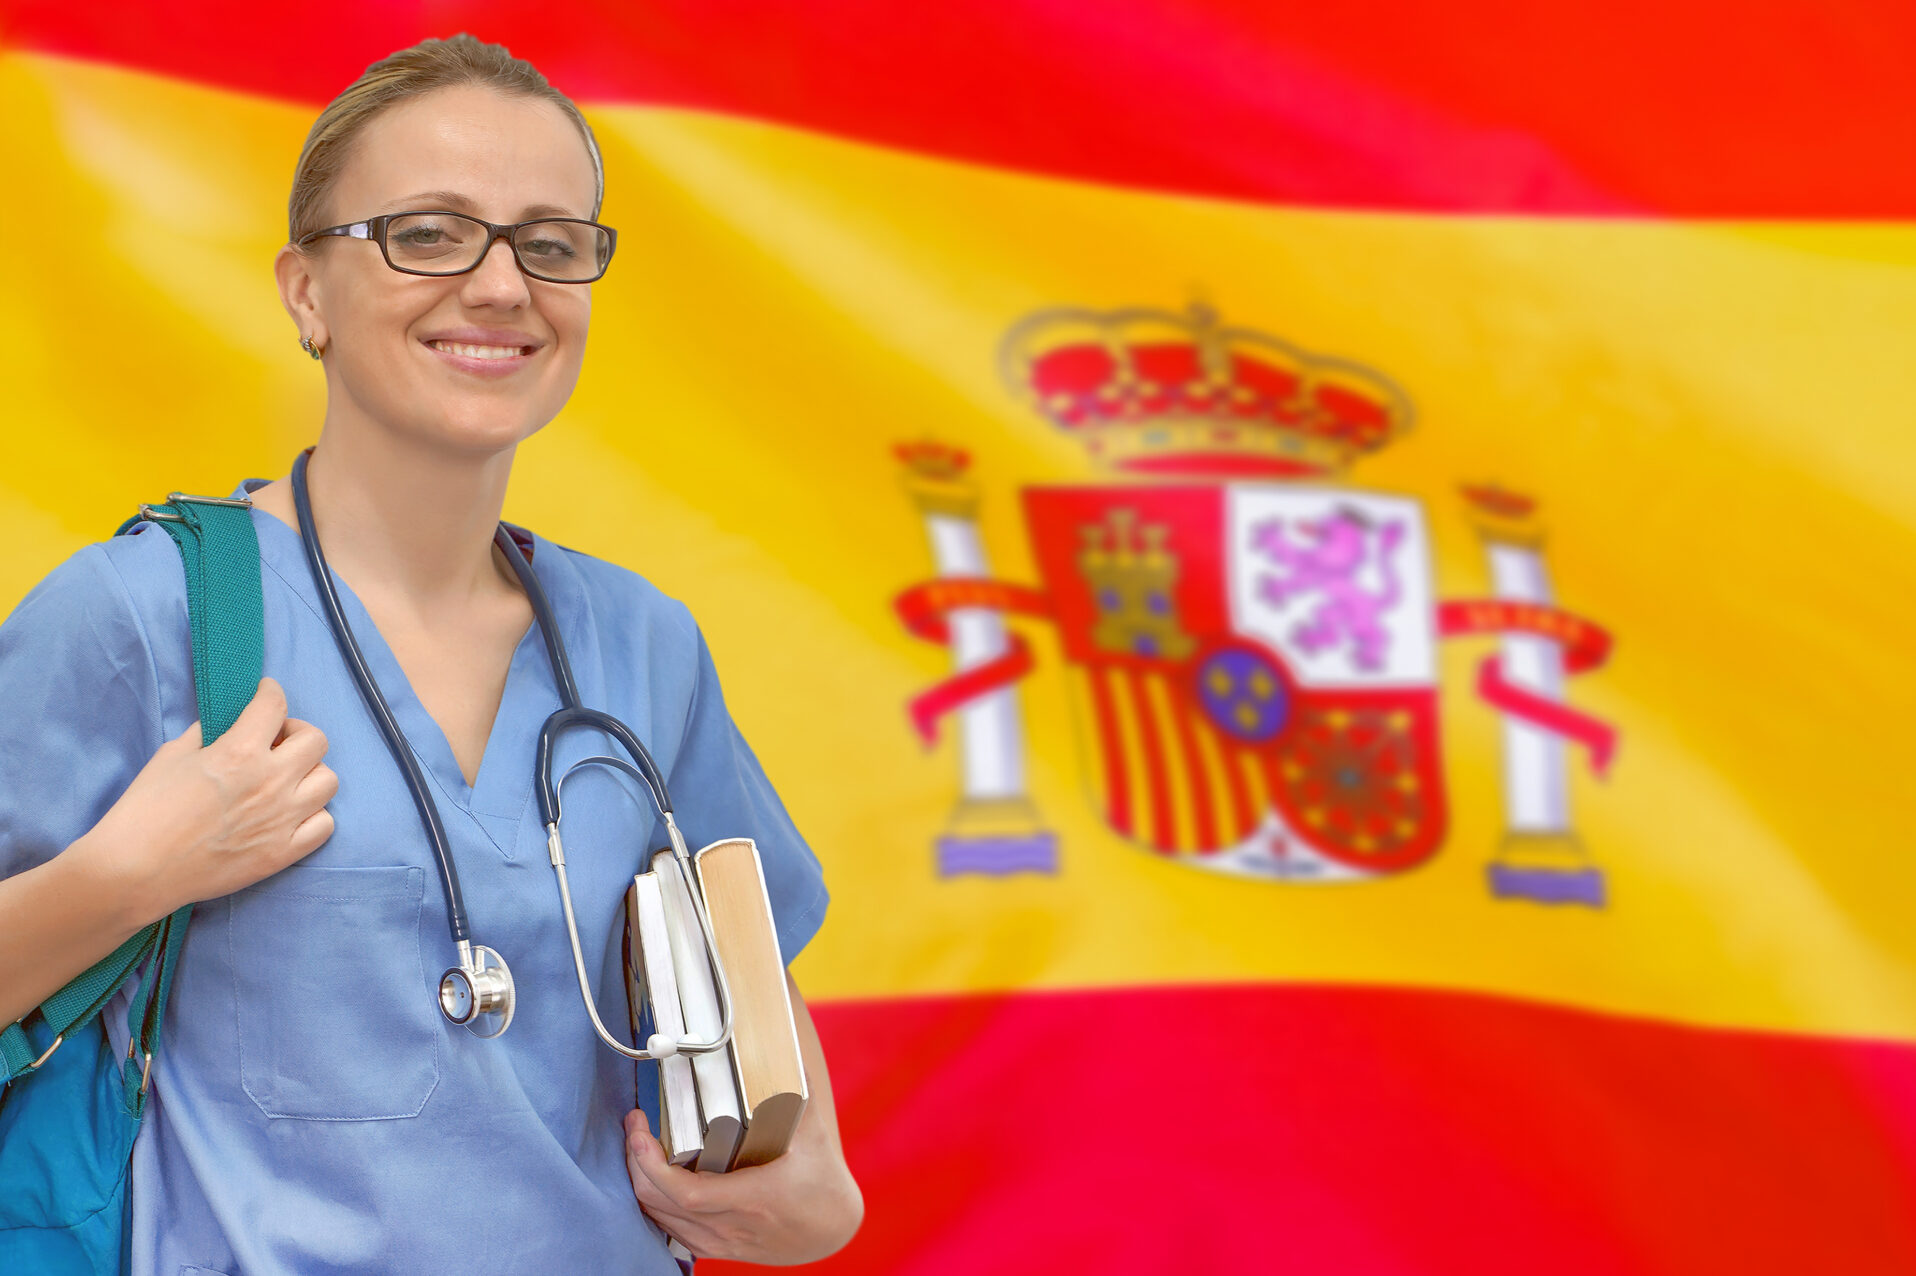 Medizinstudium in Spanien